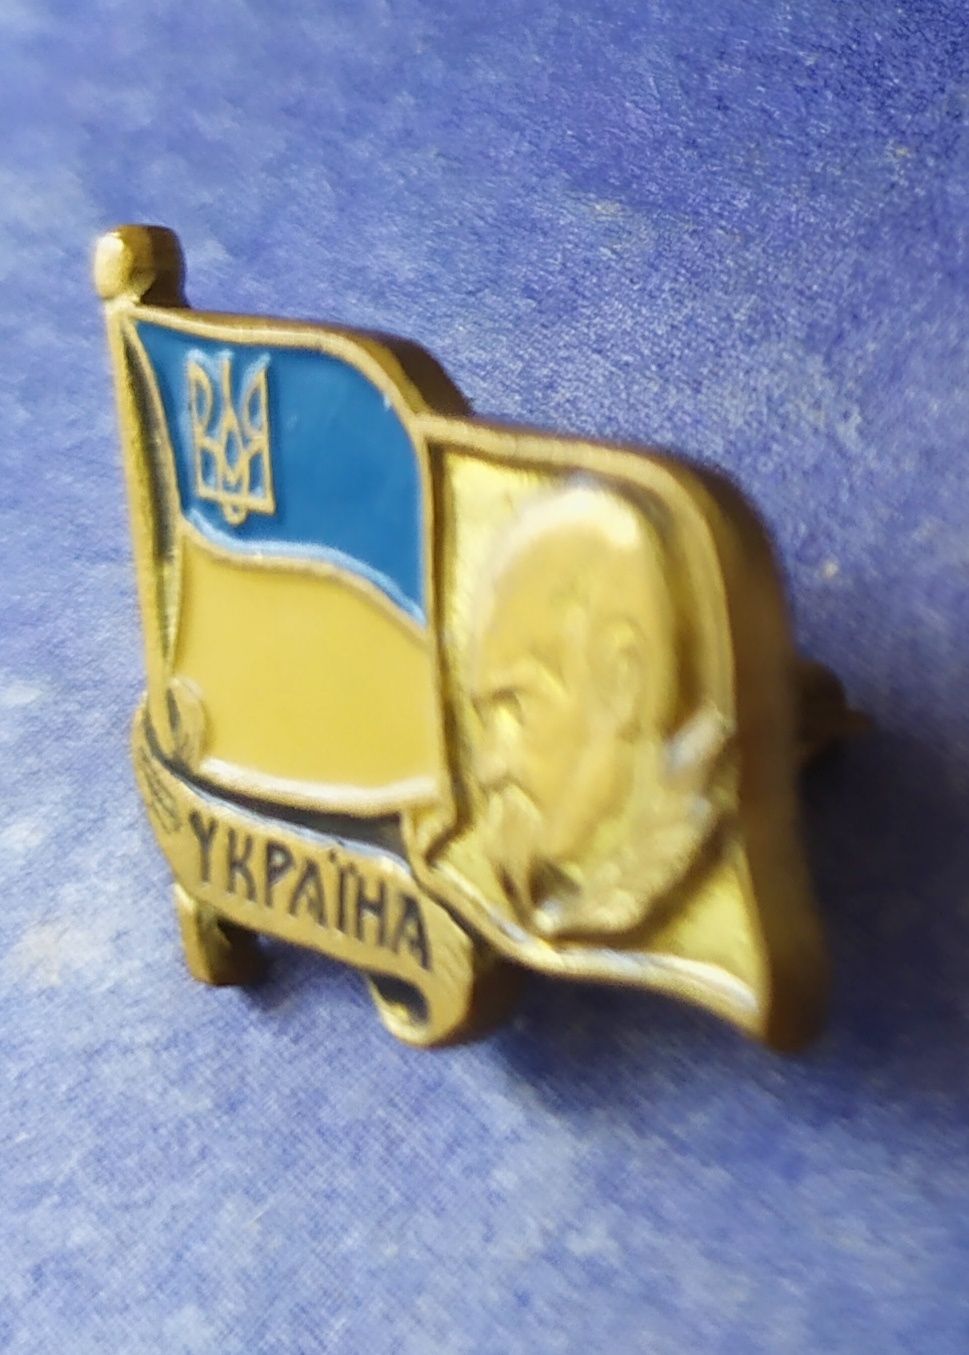 Значок Украины патриотический значок флаг Украины прапор України UA